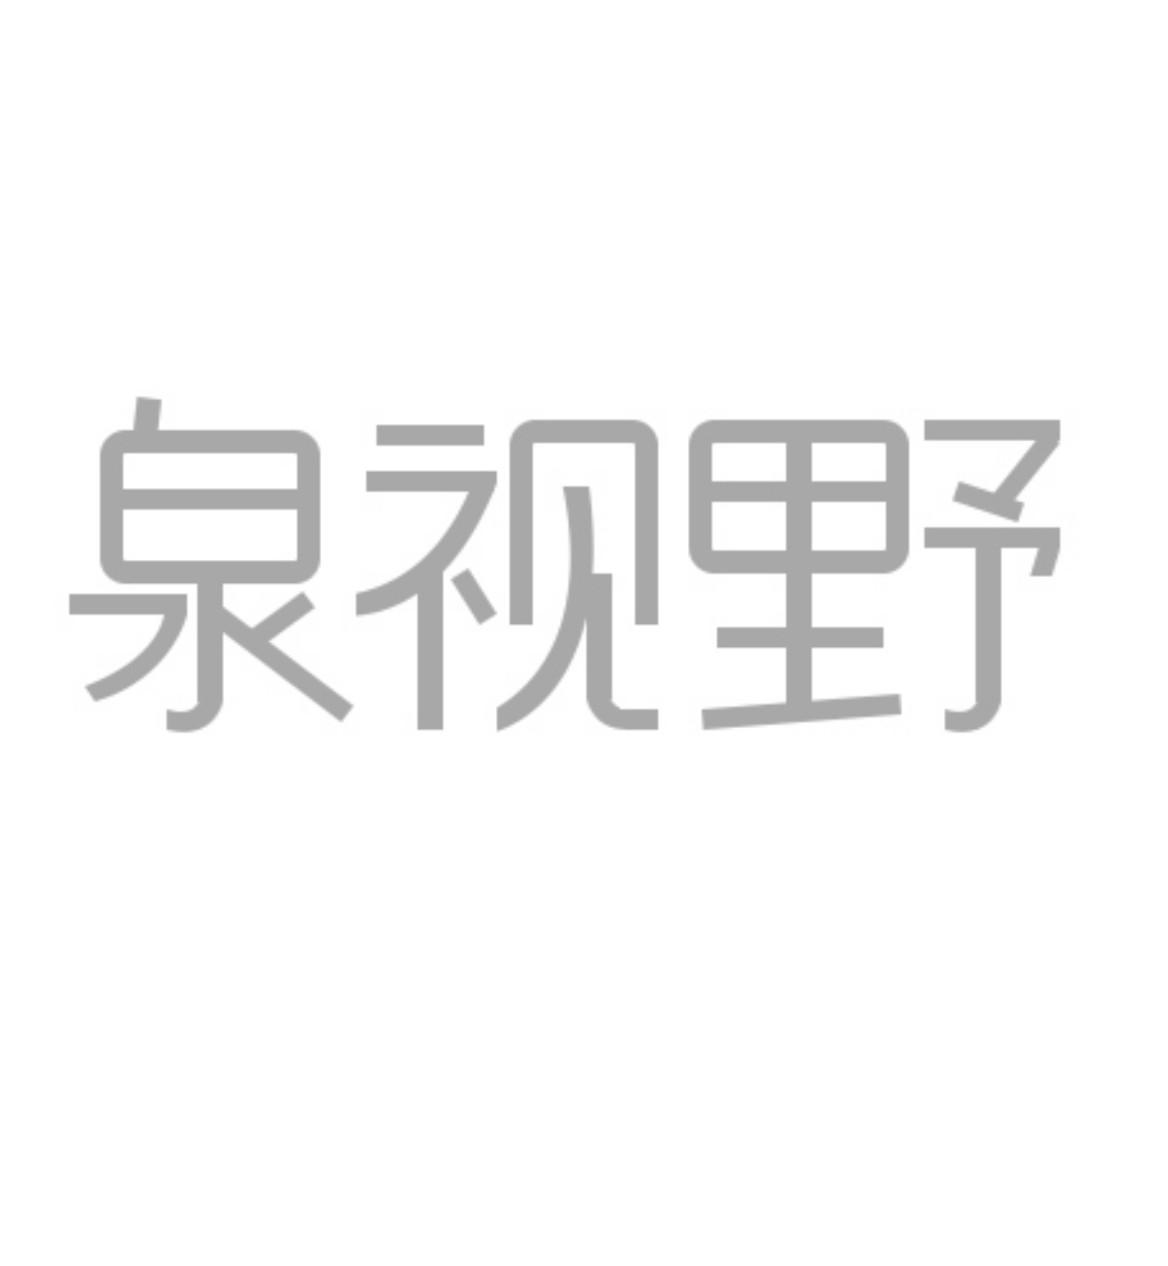 泉源堂-833409-成都泉源堂大藥房連鎖股份有限公司